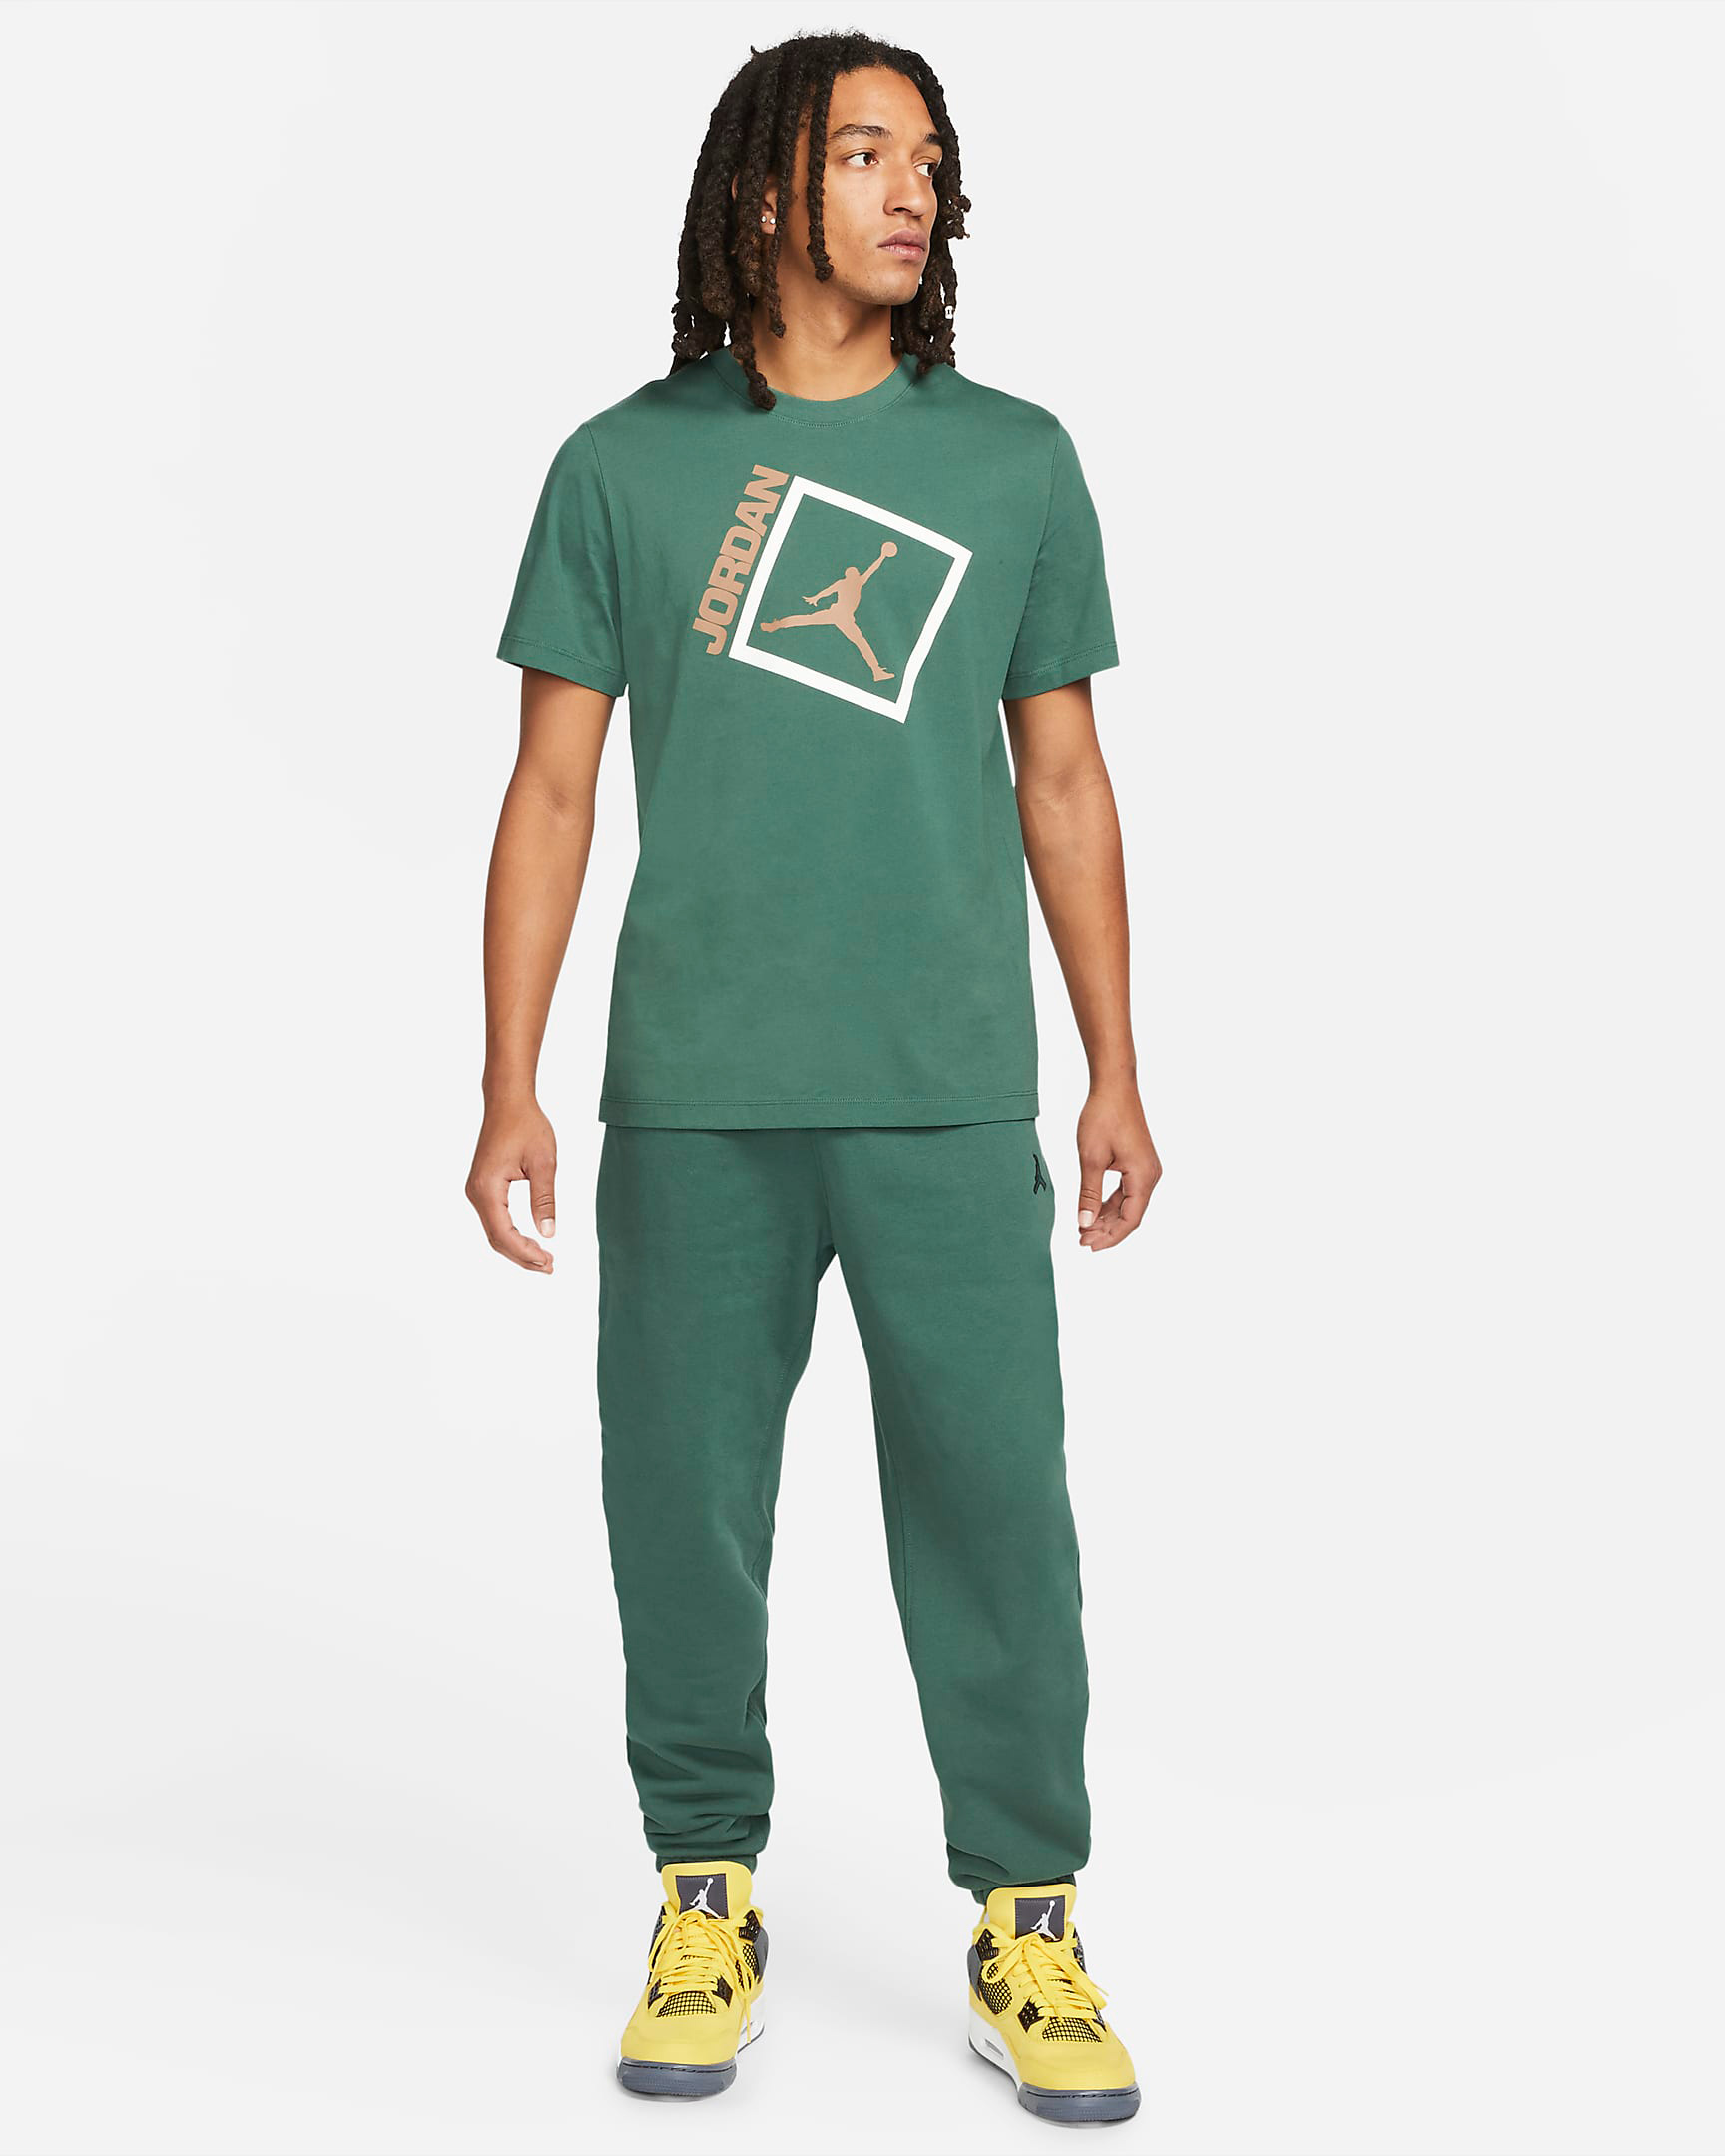 jordan-noble-green-jumpman-box-shirt-pants-outfit